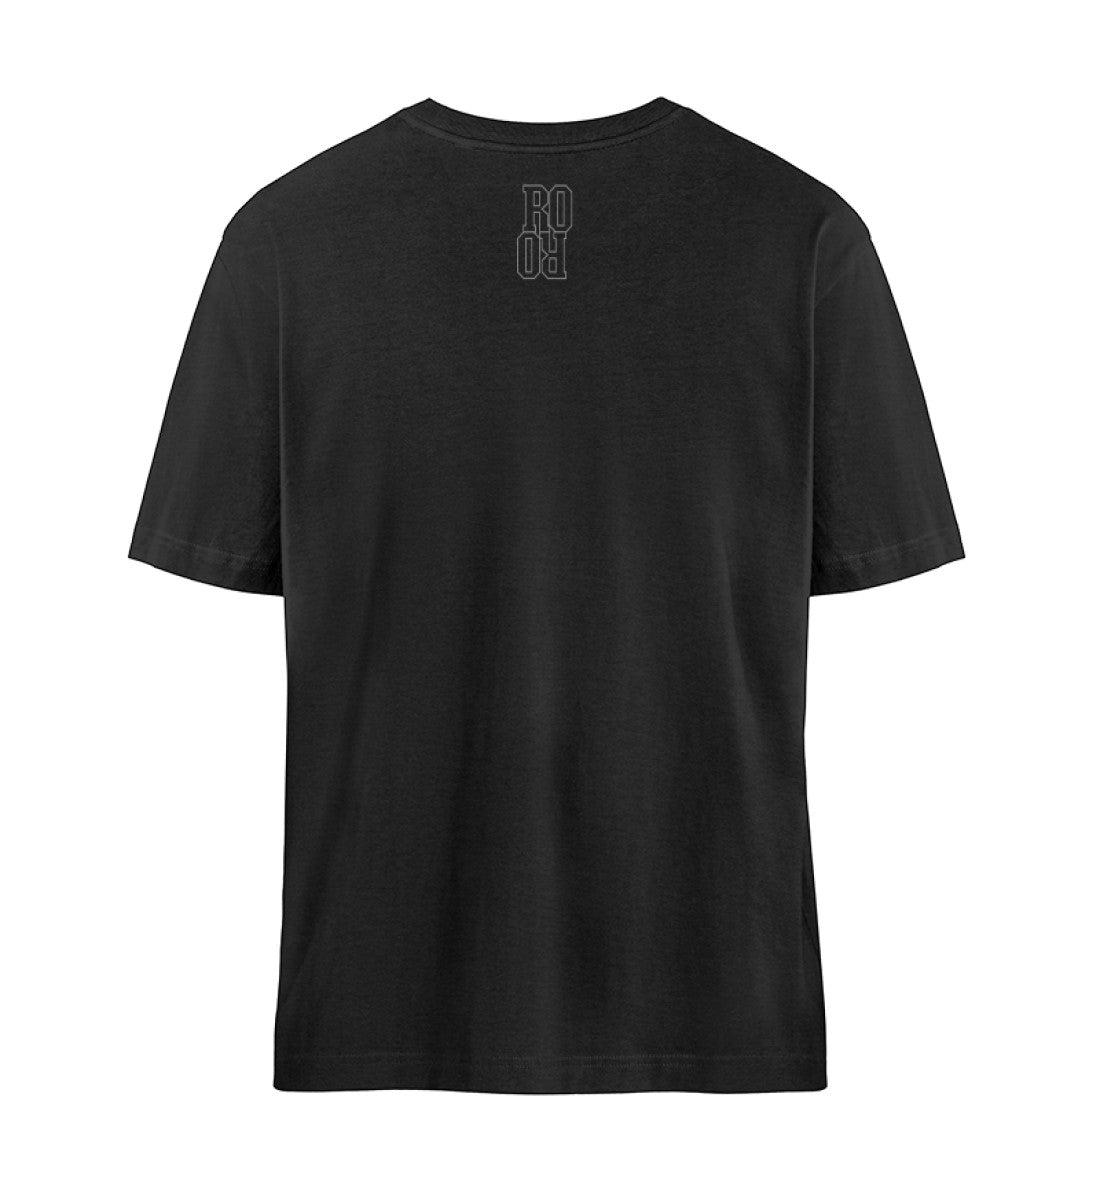 Schwarzes T-Shirt Unisex Relaxed Fit für Frauen und Männer bedruckt mit dem Design der Roger Rockawoo Kollektion Minimalism